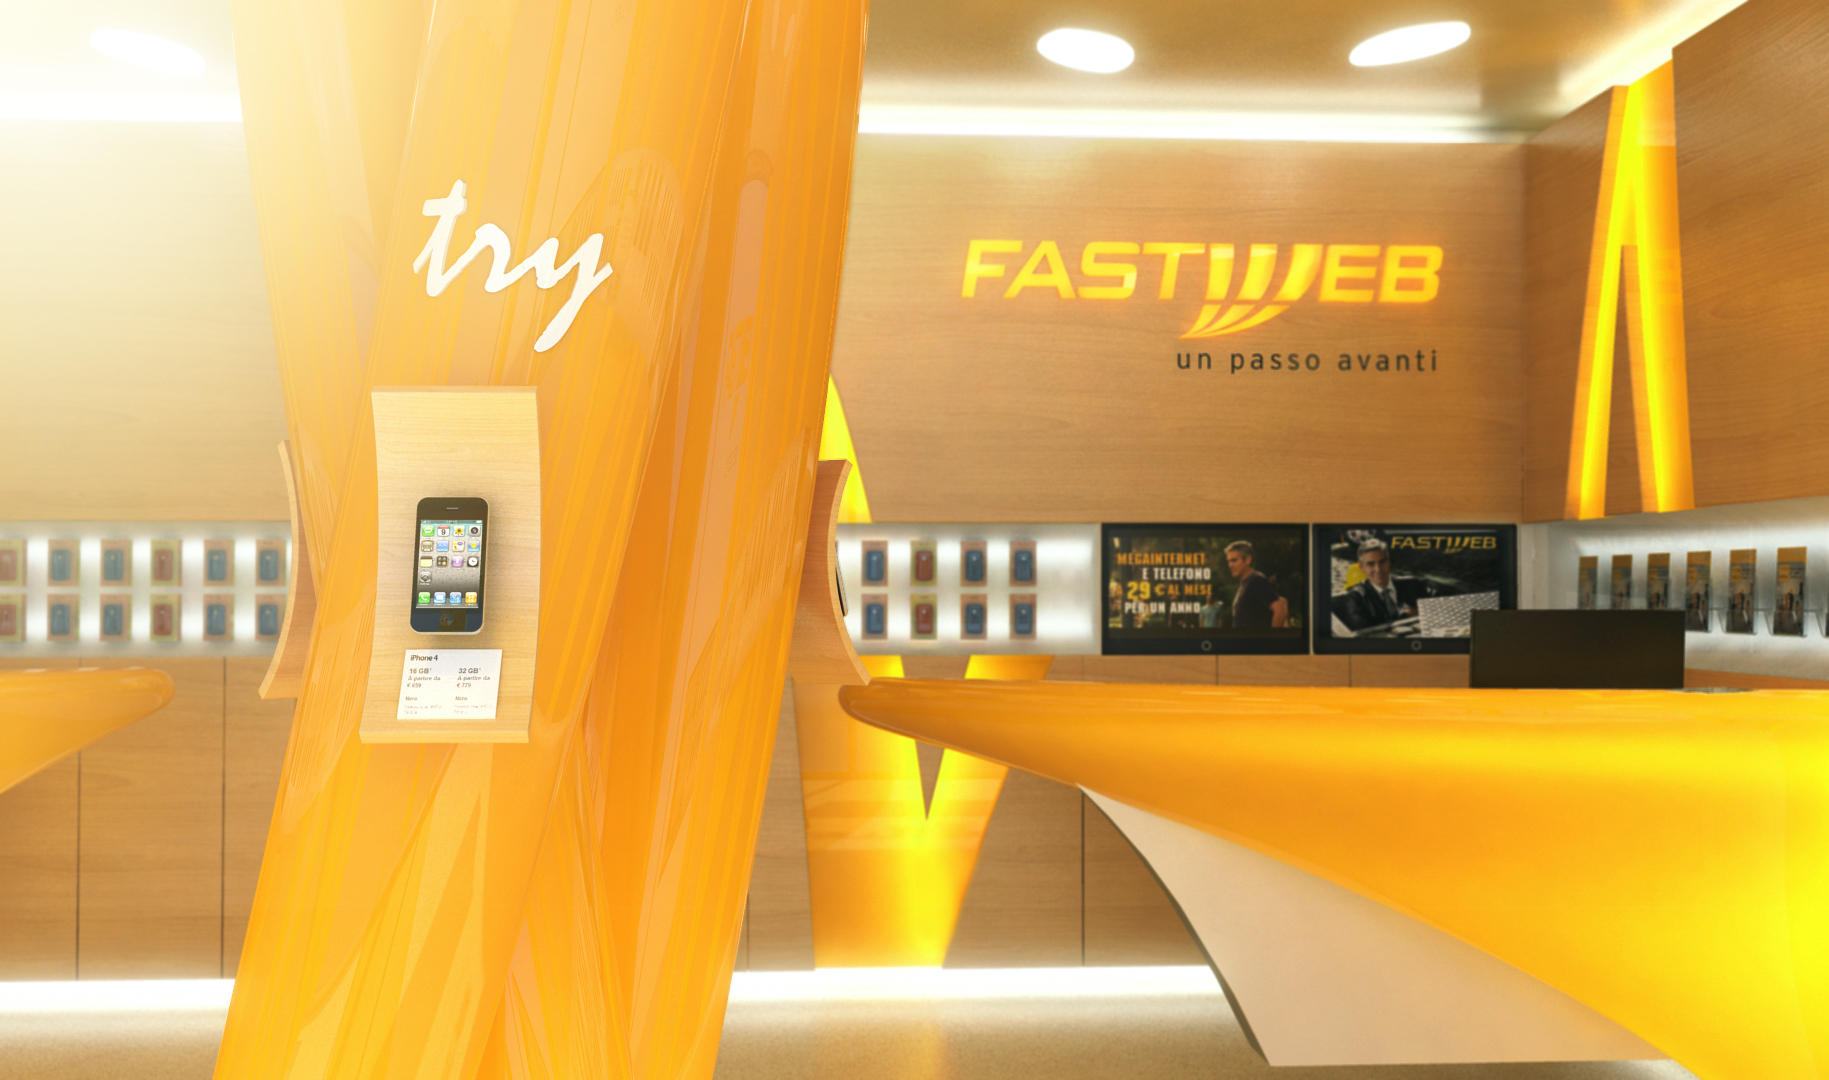 Fastweb: Migliori promozioni, sconti ed offerte (Giugno 2014)